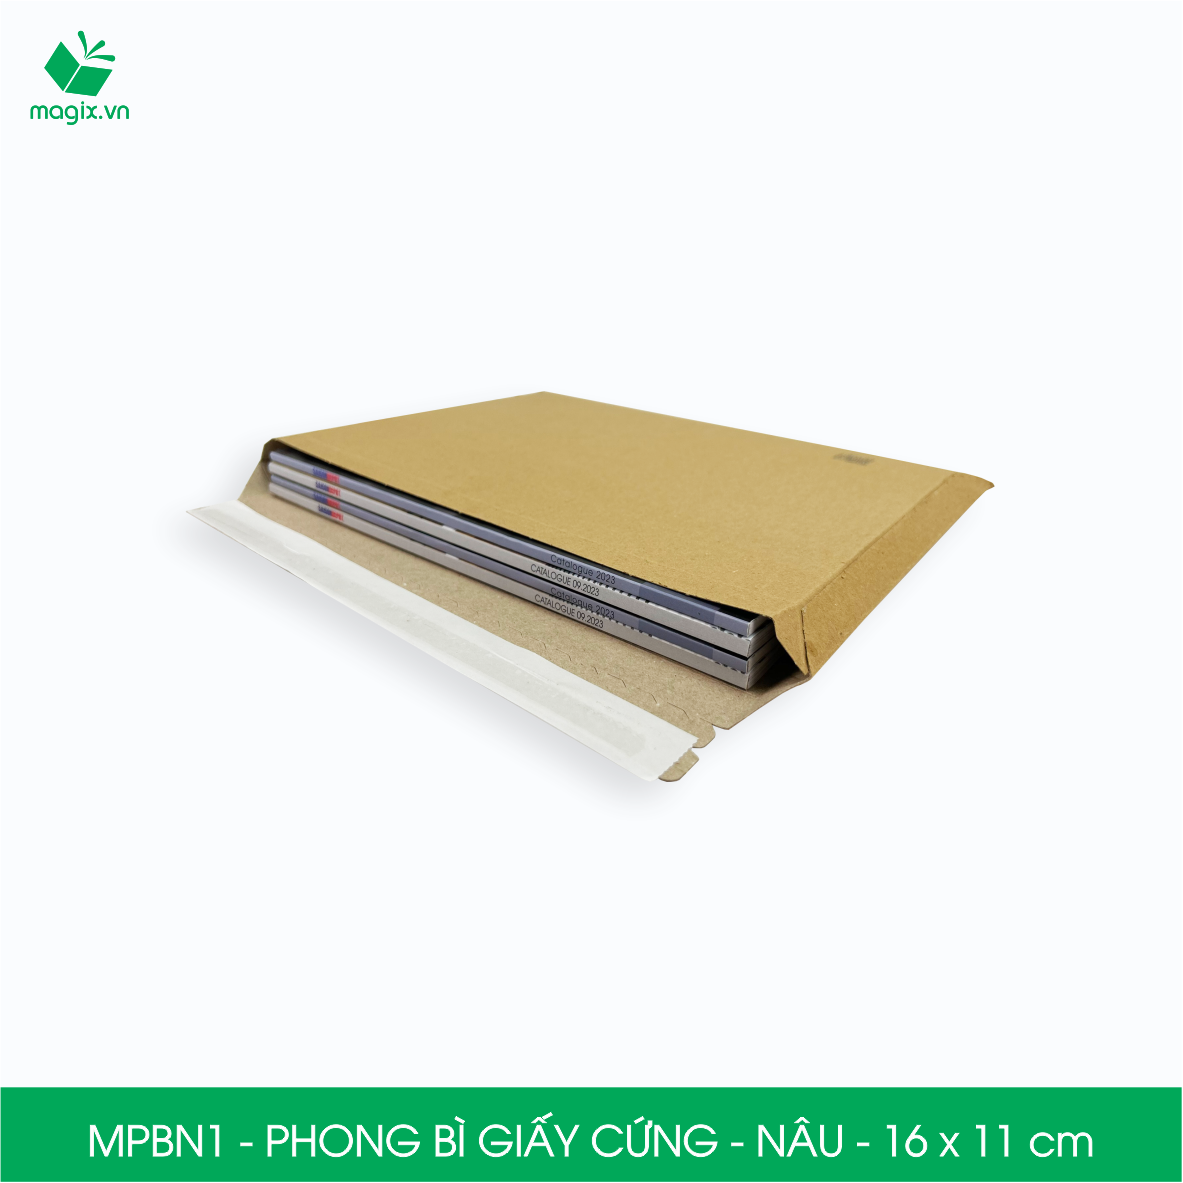 MPBN1 - 16x11 cm - Combo 100 phong bì giấy cứng đóng hàng màu nâu thay thế túi gói hàng